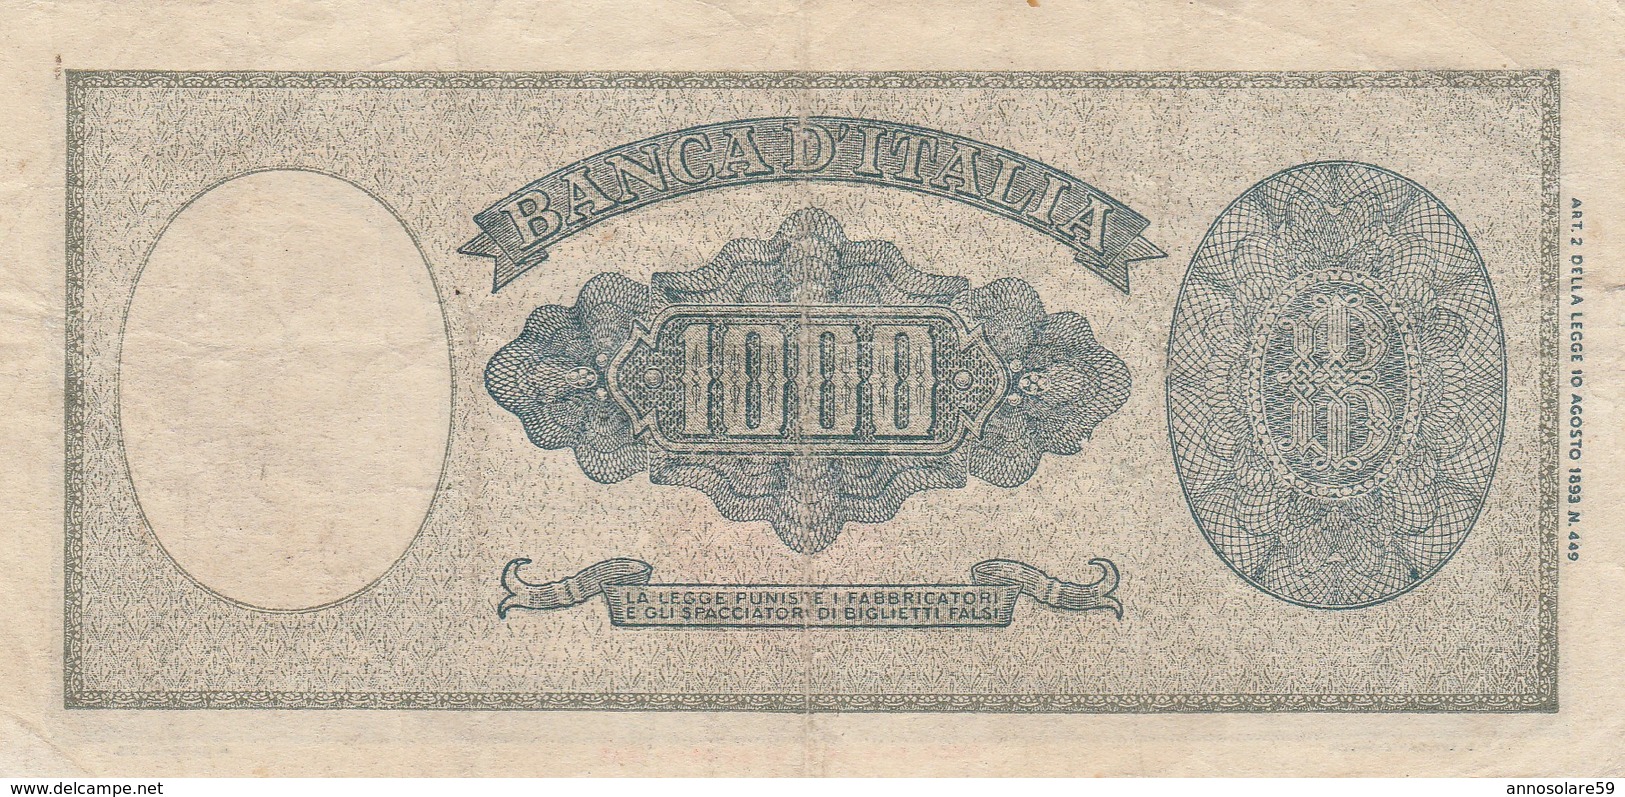 BANCONOTA: REPUBBLICA ITALIANA *1.000 LIRE TESTINA* 18/AGOSTO/1943 - FALSO D'EPOCA, ORIGINALE 100% - LEGGI - 100 Lire